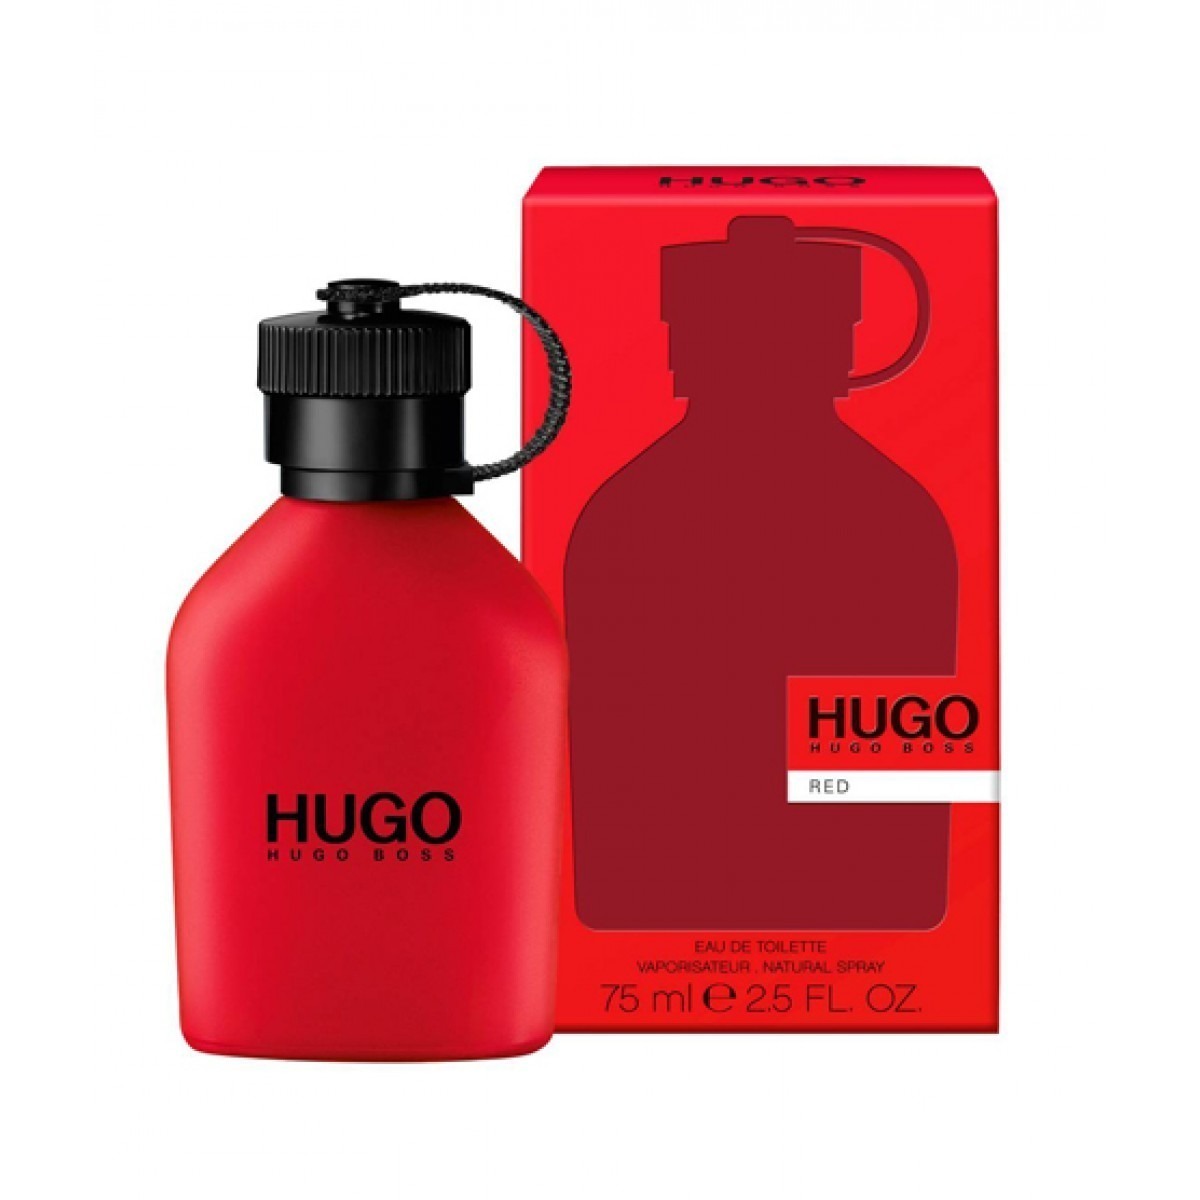 HUGO BOSS RED EDT 75ML FOR MEN - Perfume Bangladesh